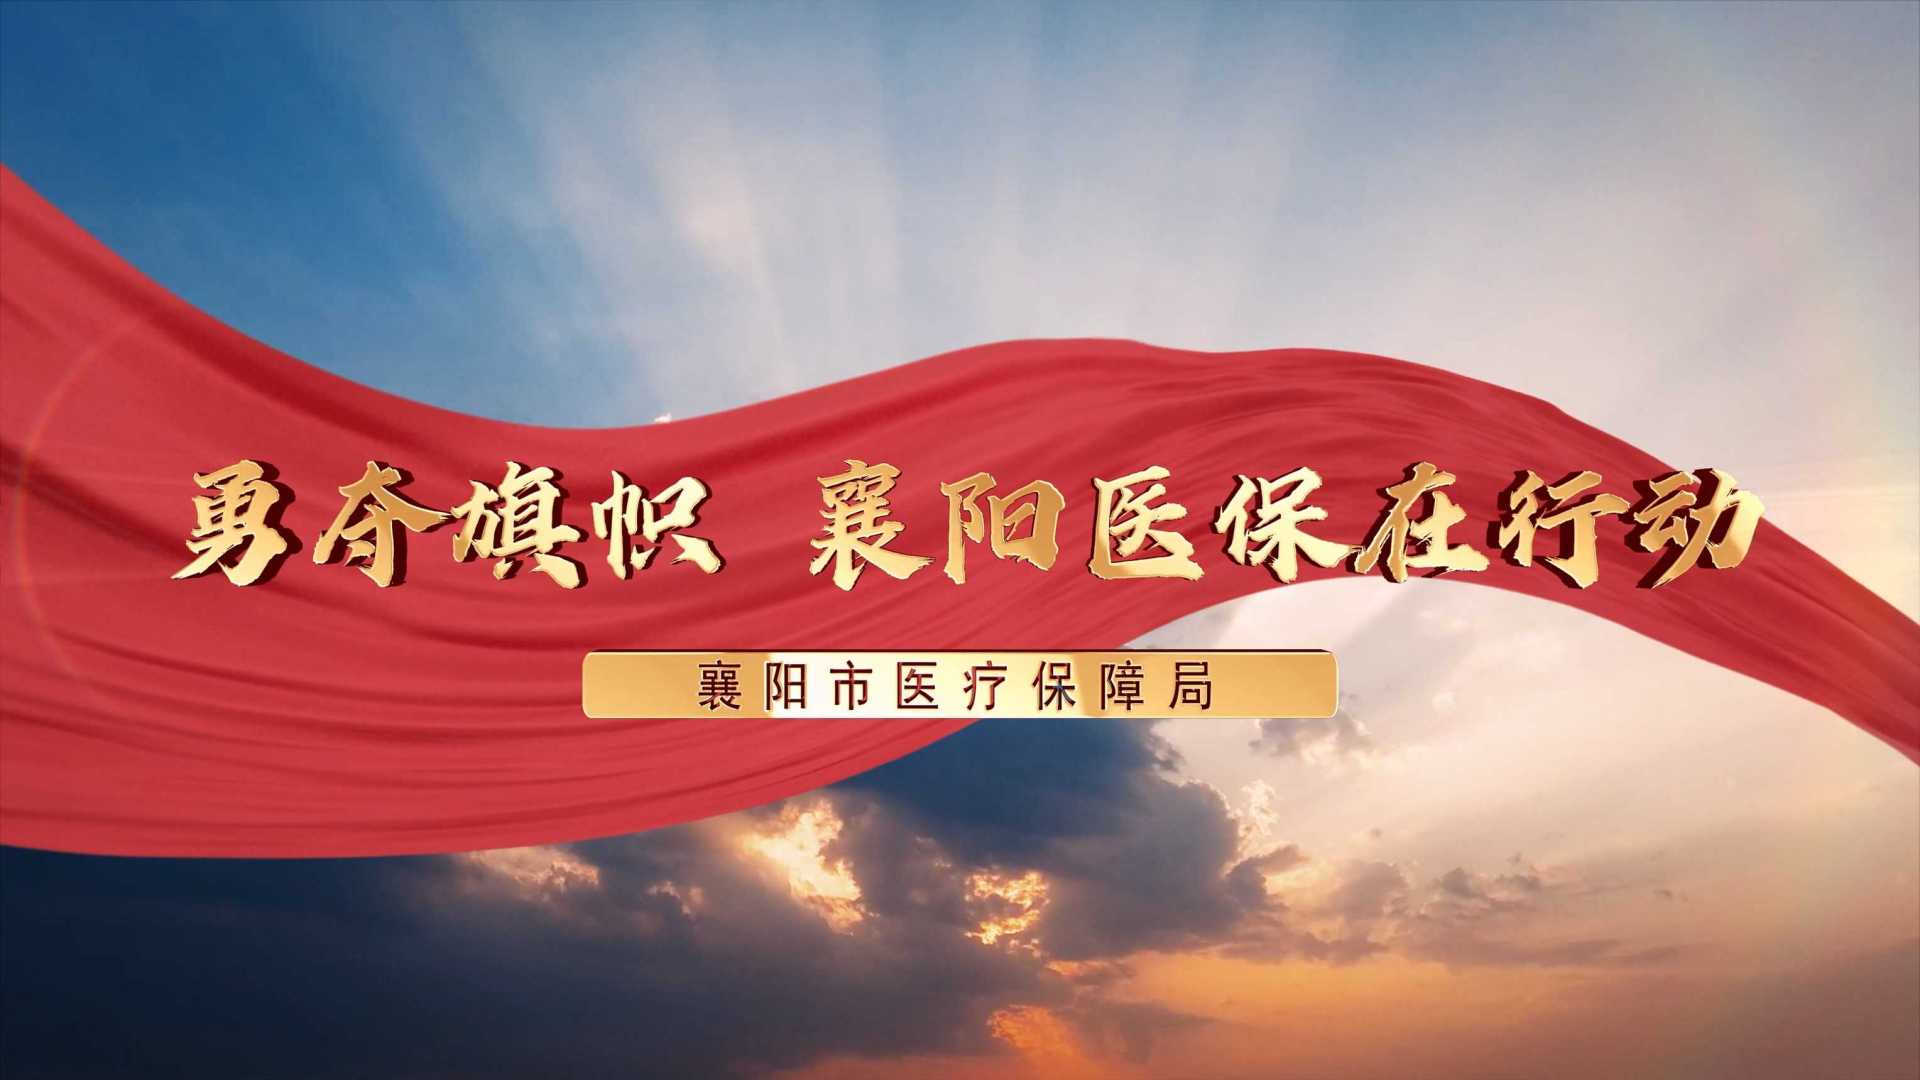 微视频《勇夺旗帜 襄阳医保在行动》4K